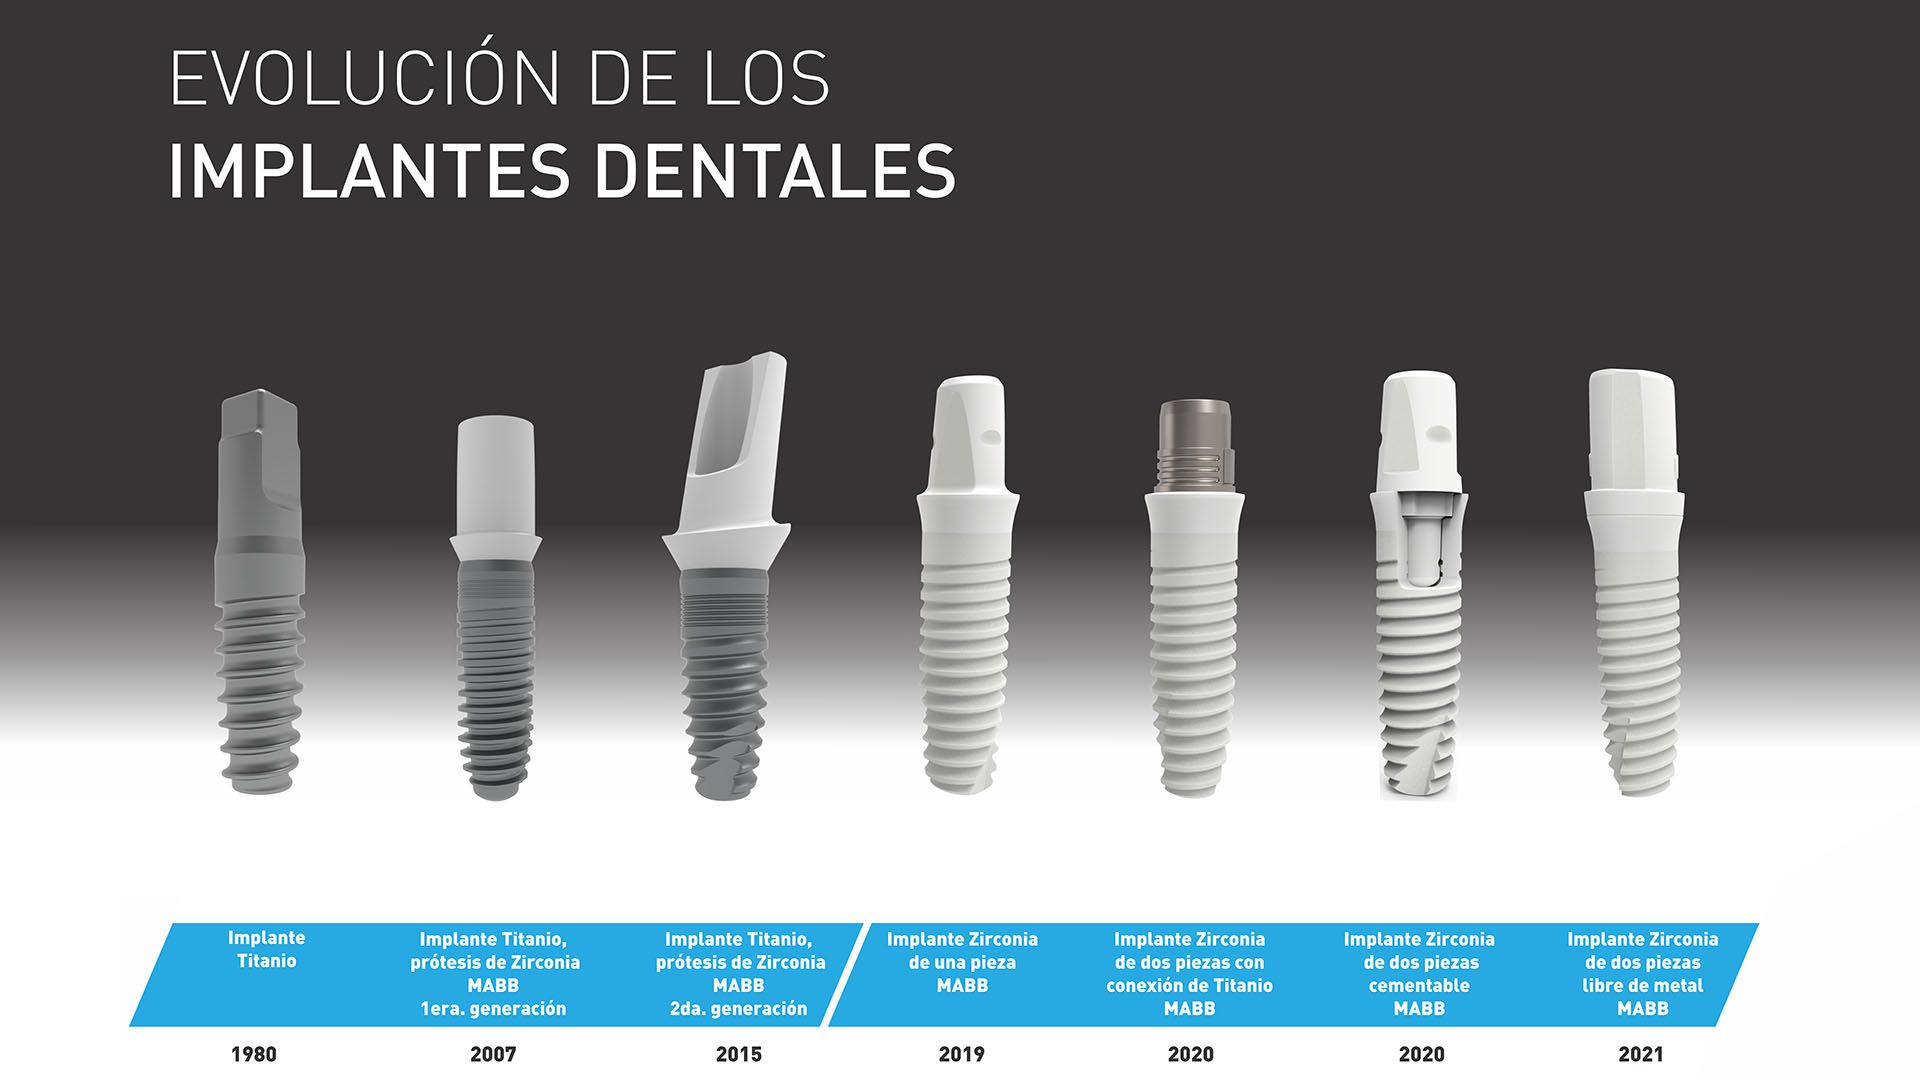 Evolución de los implantes dentales desde 1980 (MABB)